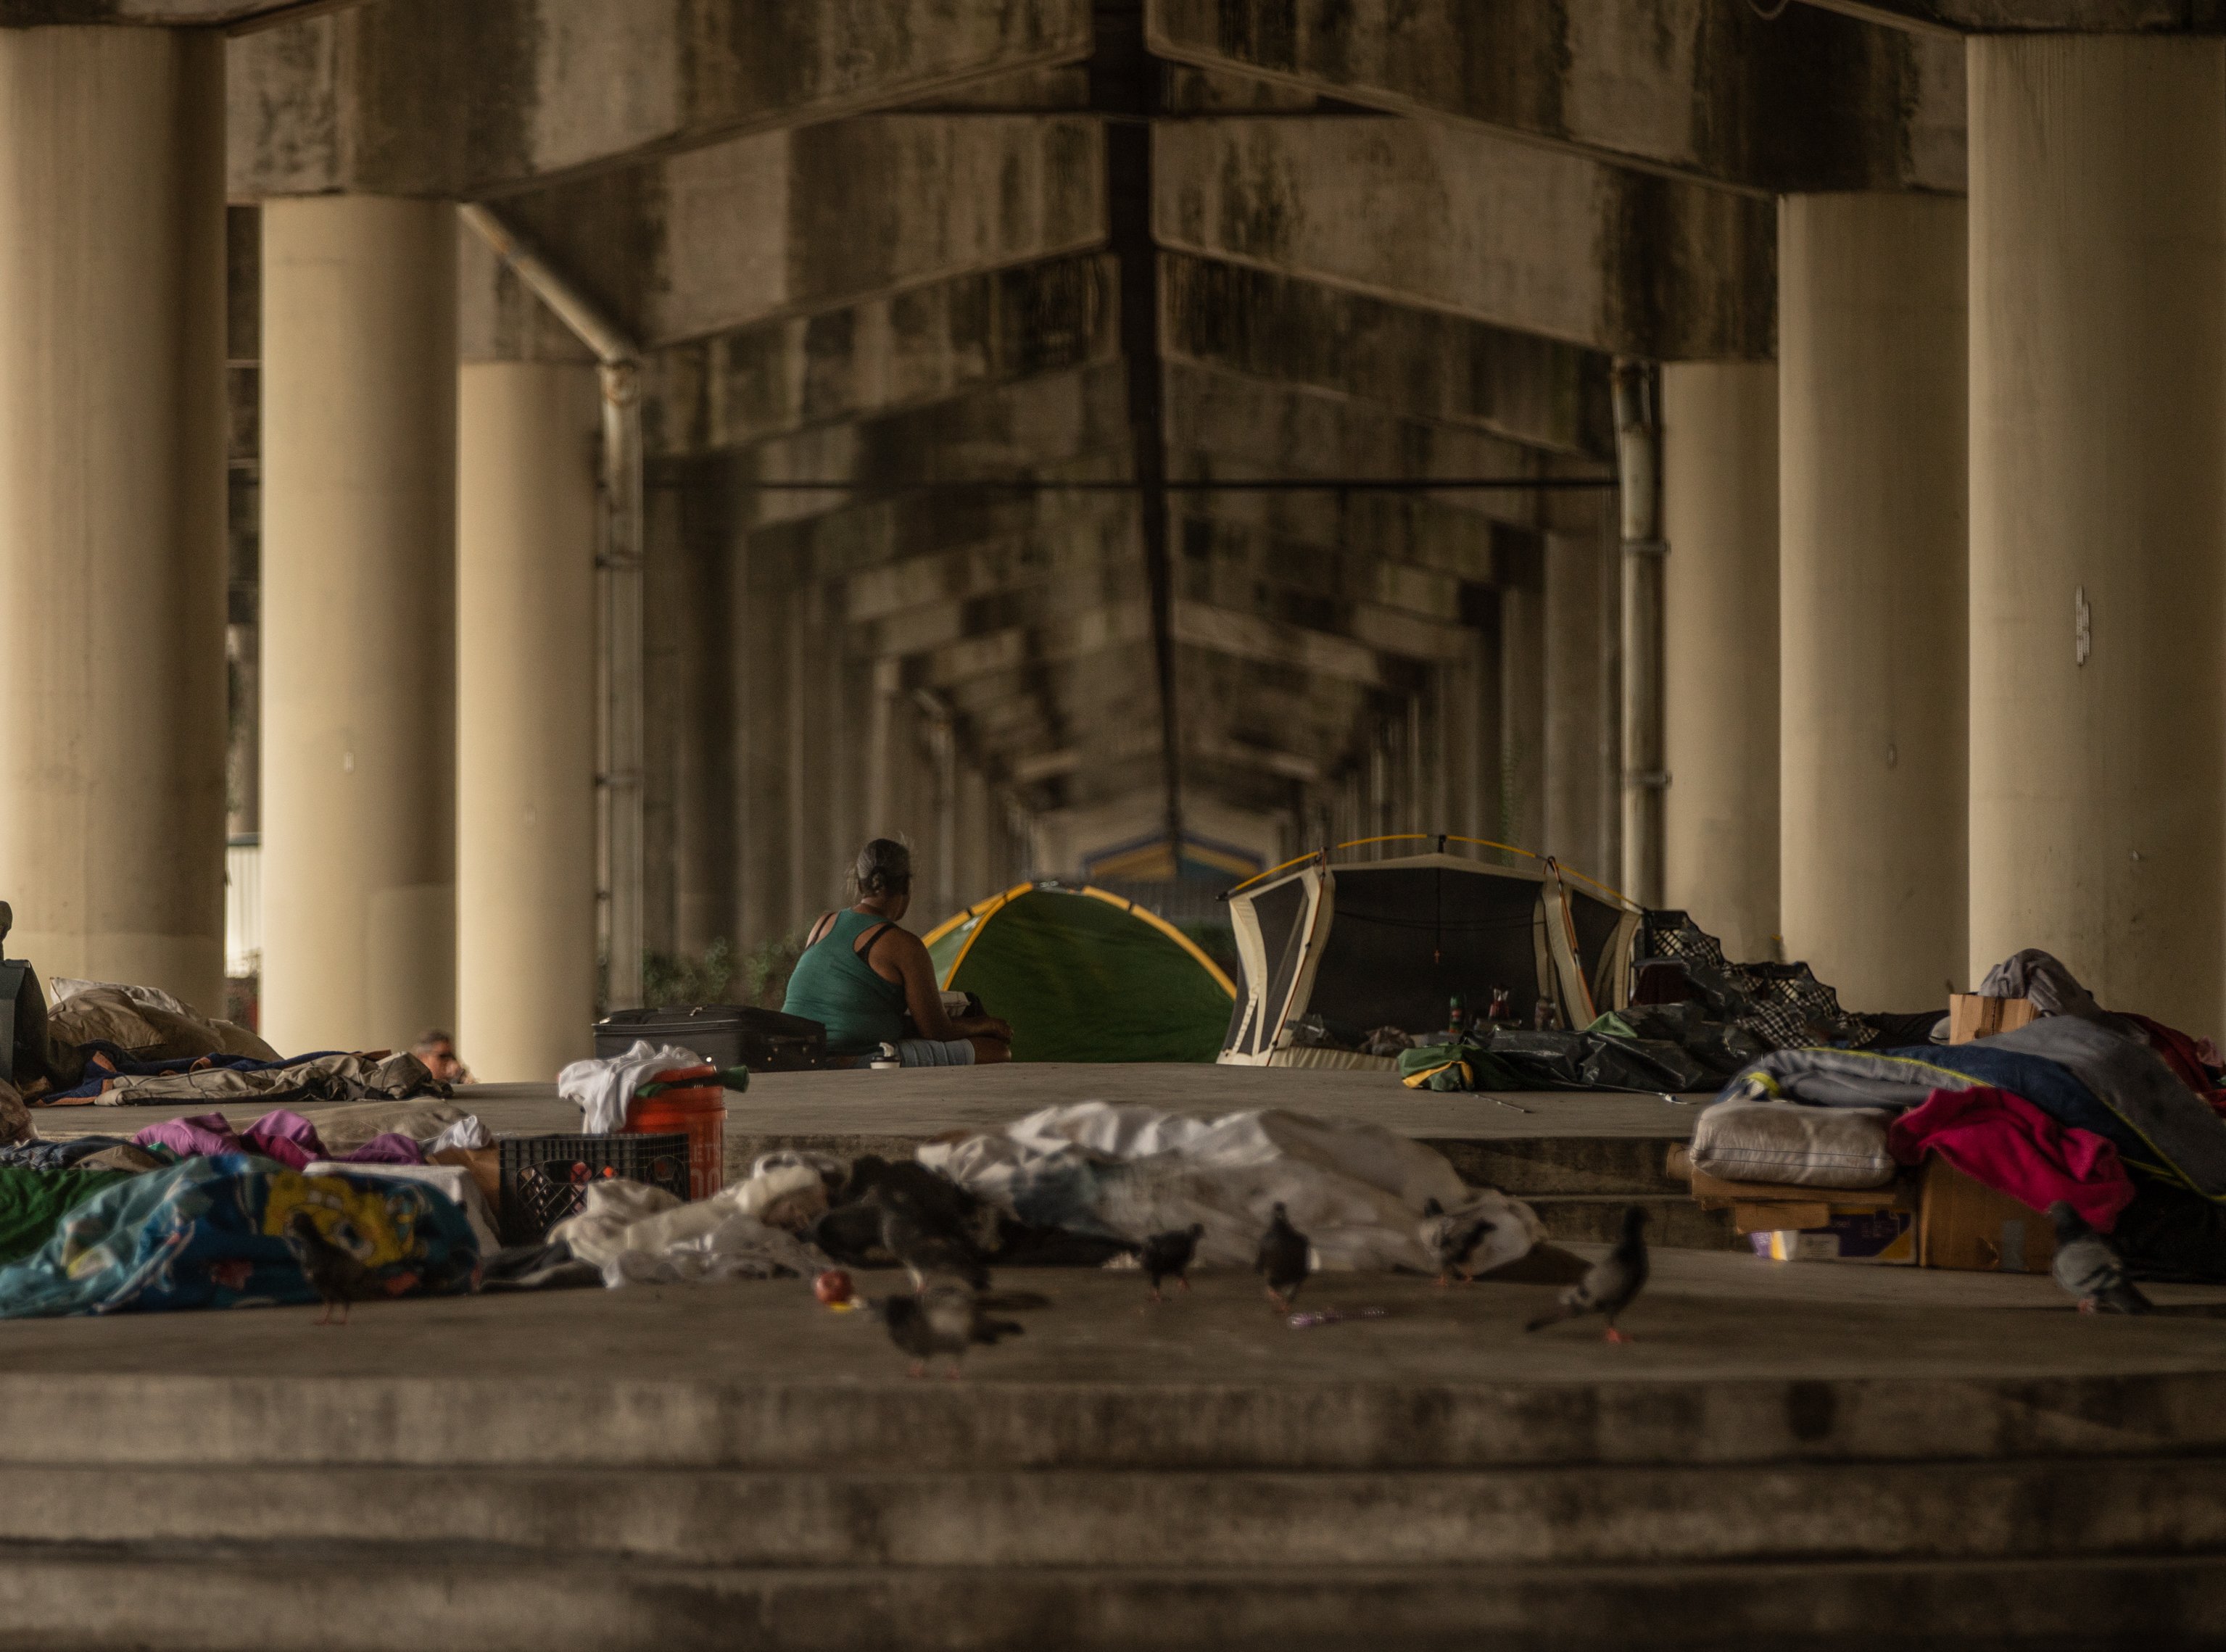 Grupo de desamparados bajo puente. | Foto: Shutterstock